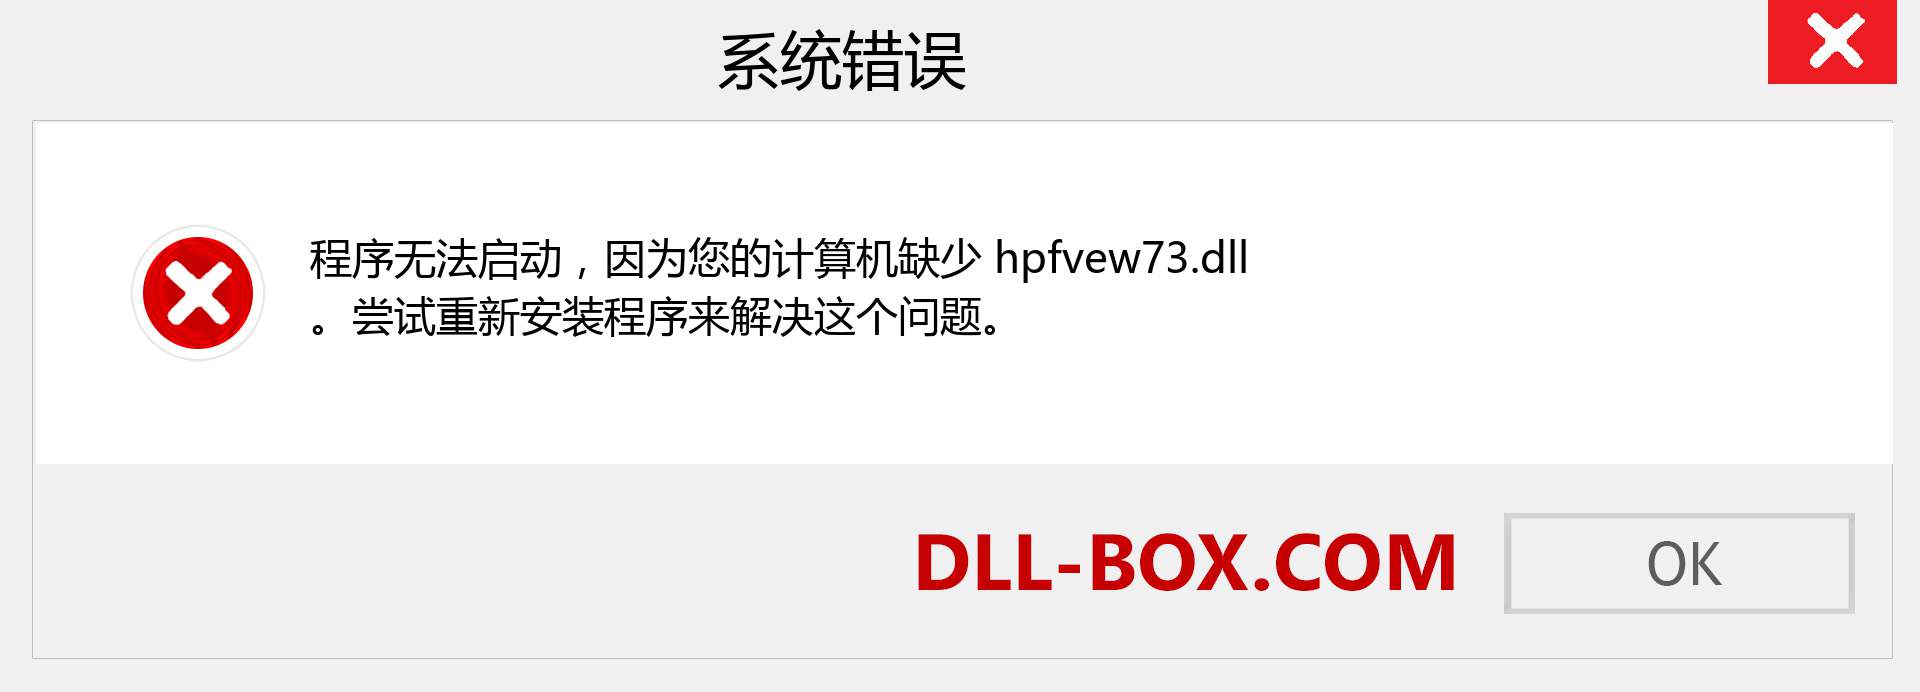 hpfvew73.dll 文件丢失？。 适用于 Windows 7、8、10 的下载 - 修复 Windows、照片、图像上的 hpfvew73 dll 丢失错误